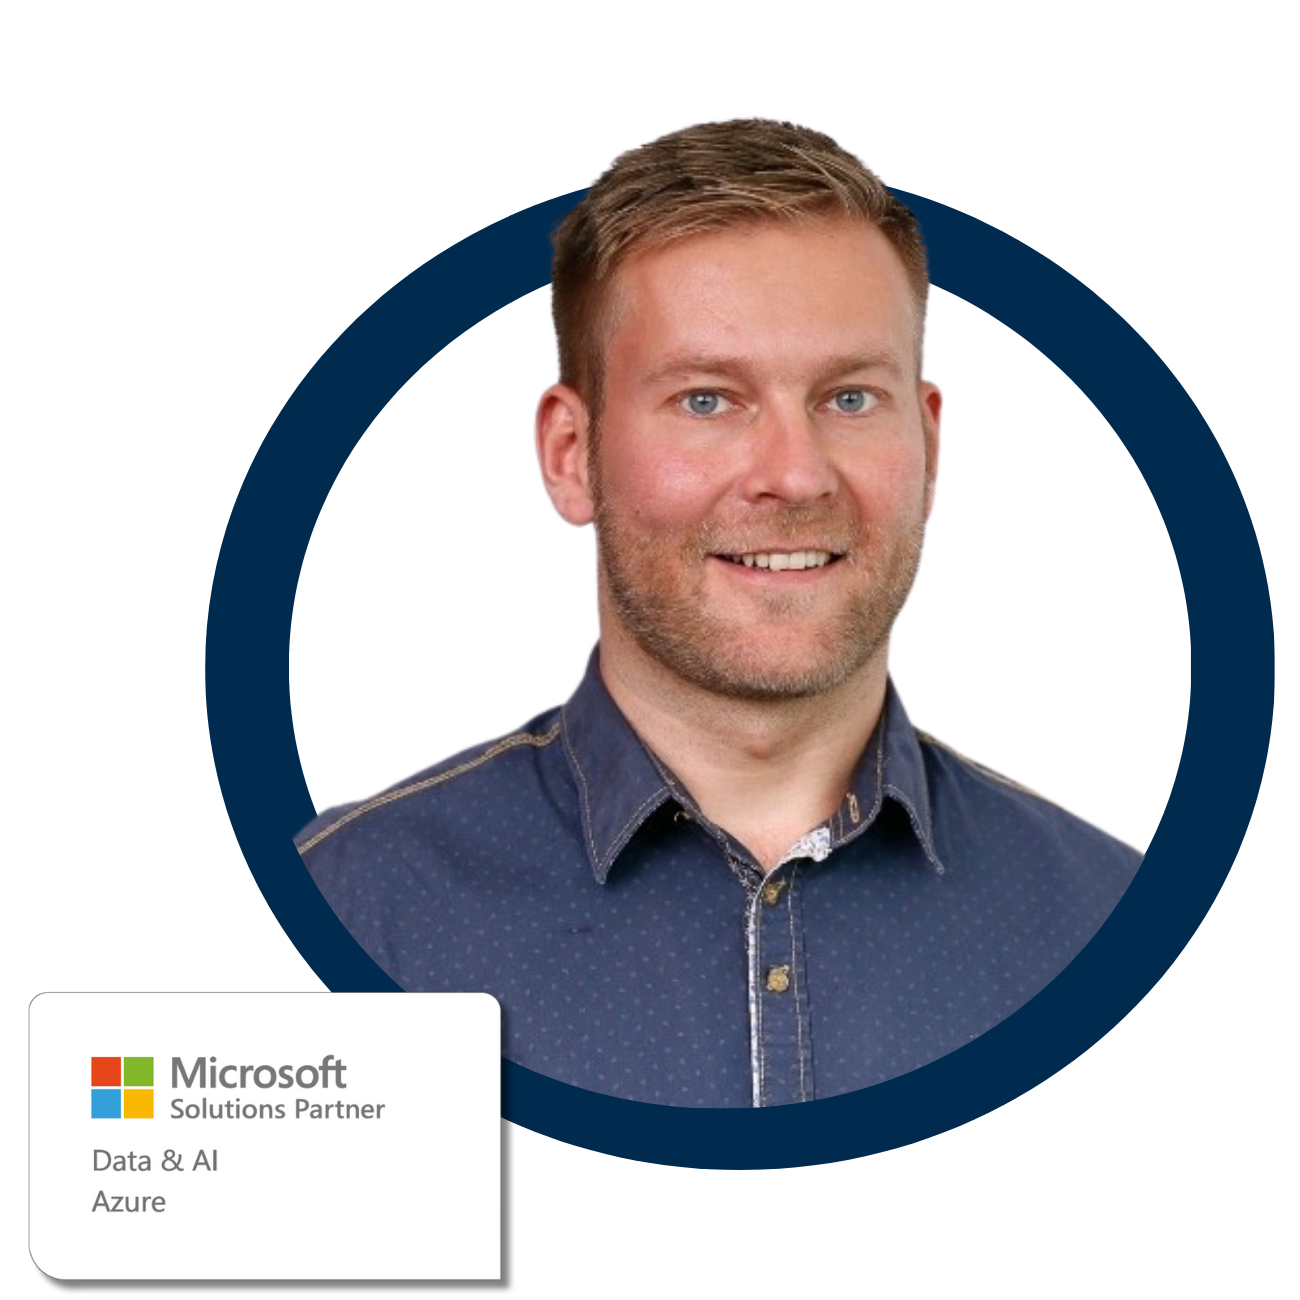 Thomas_Kranzkowski_Microsoft-Solution-Partner